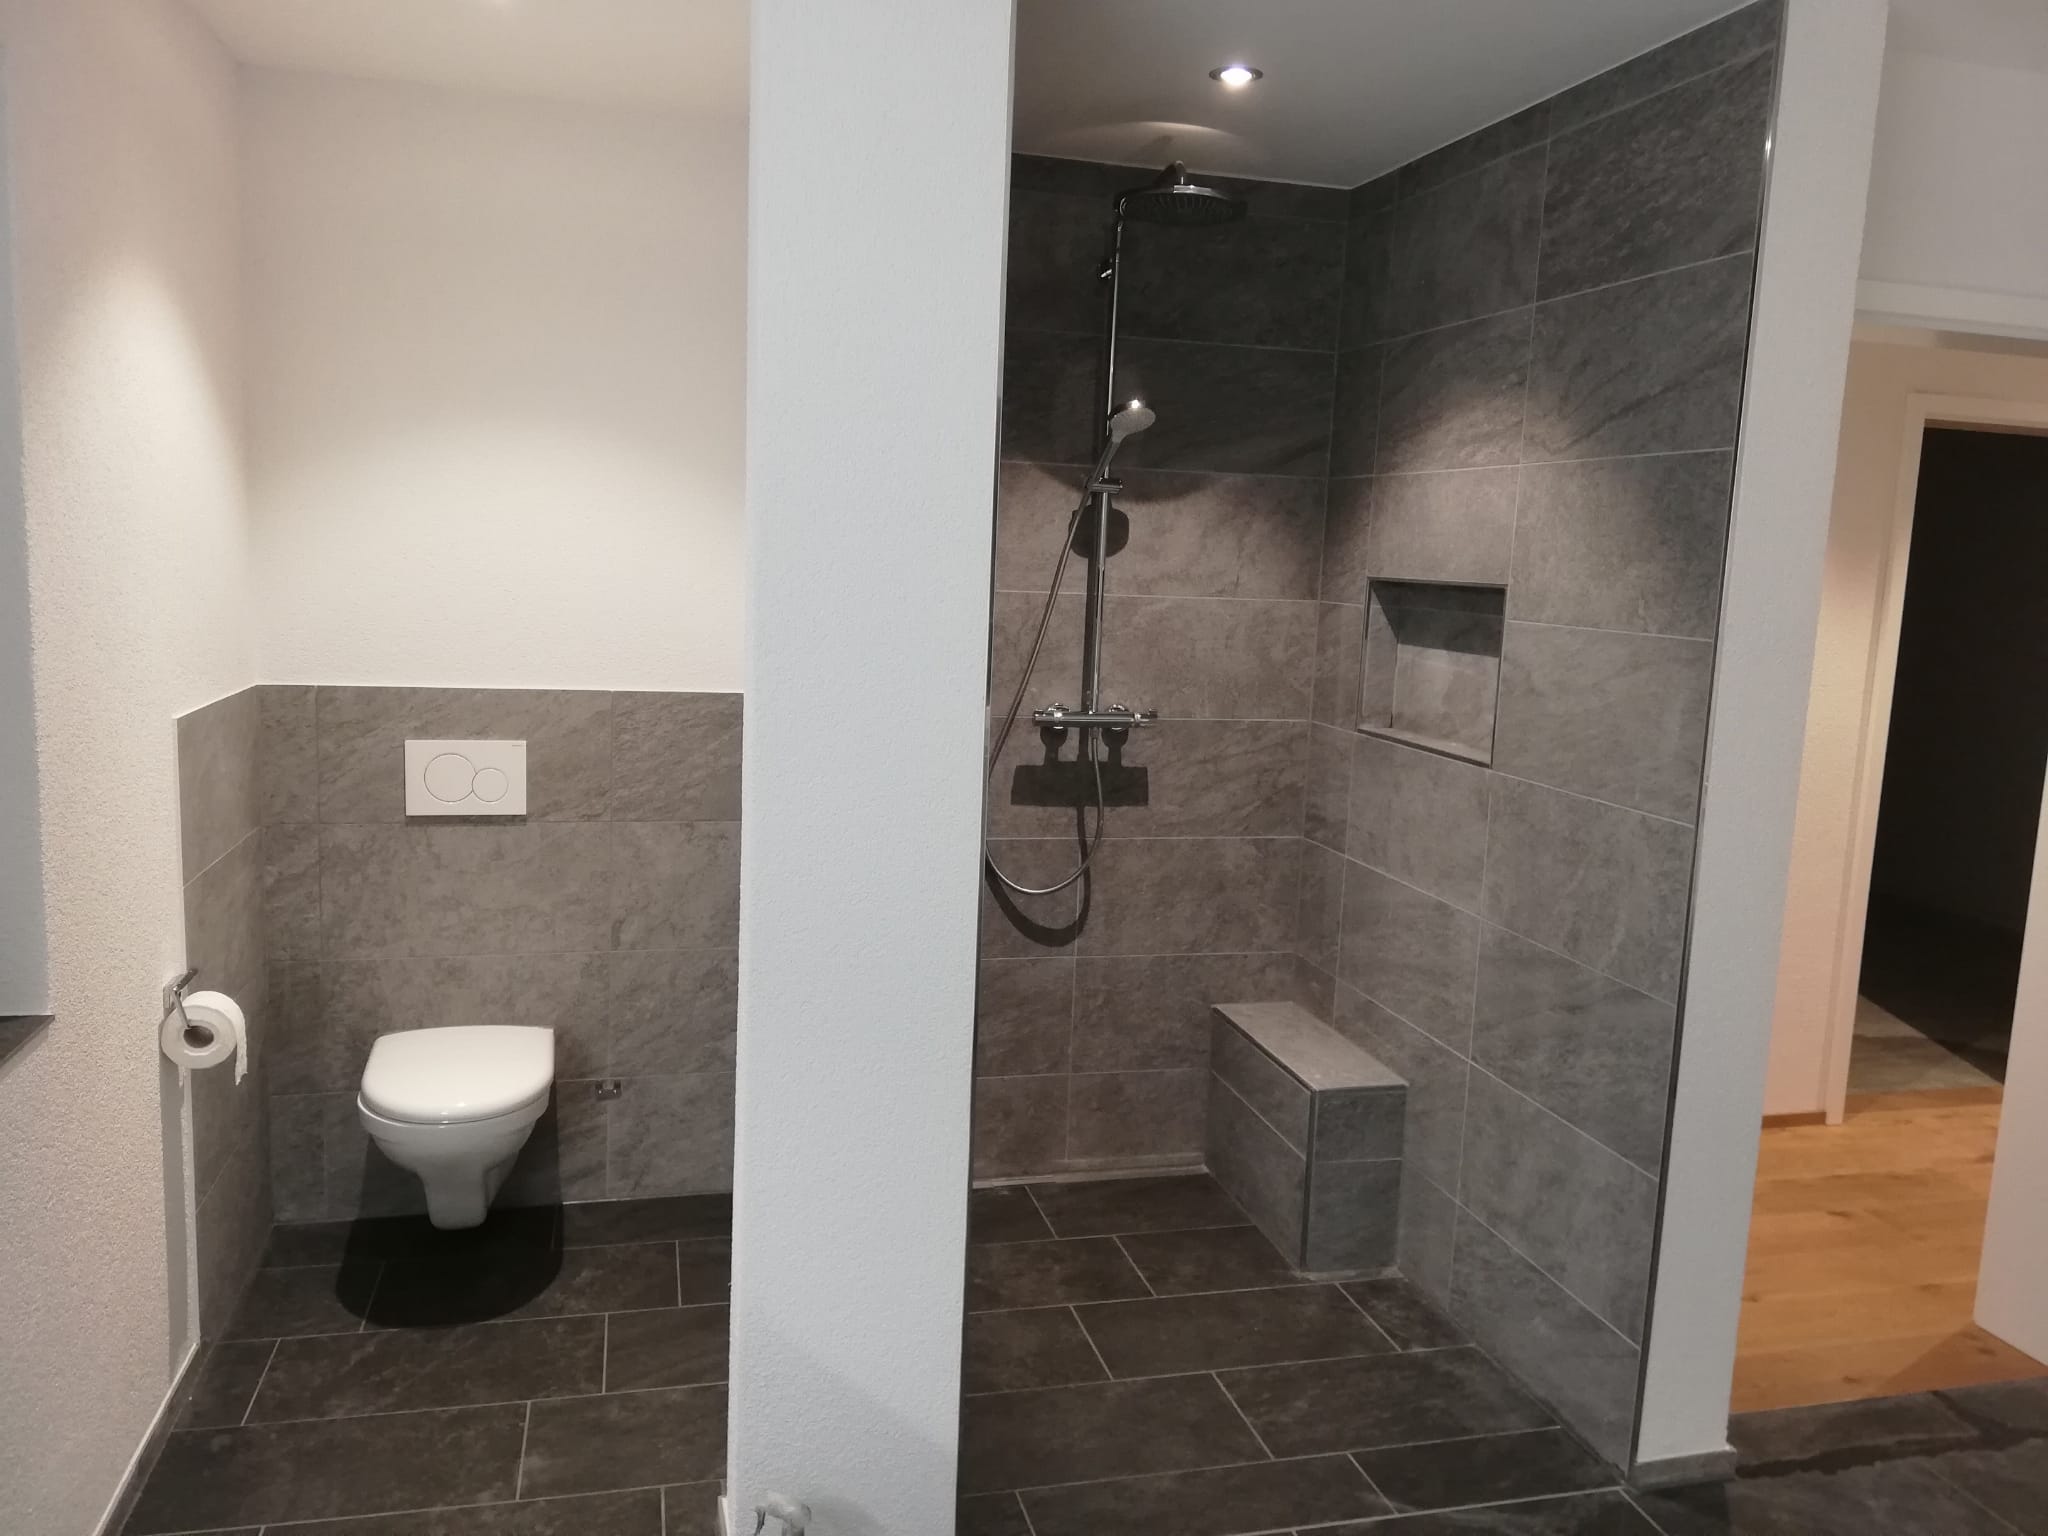 Bild von Bad in Neubau EFH, Fliesen 30x60 cm, WC und Duschnische mit Sitzbank